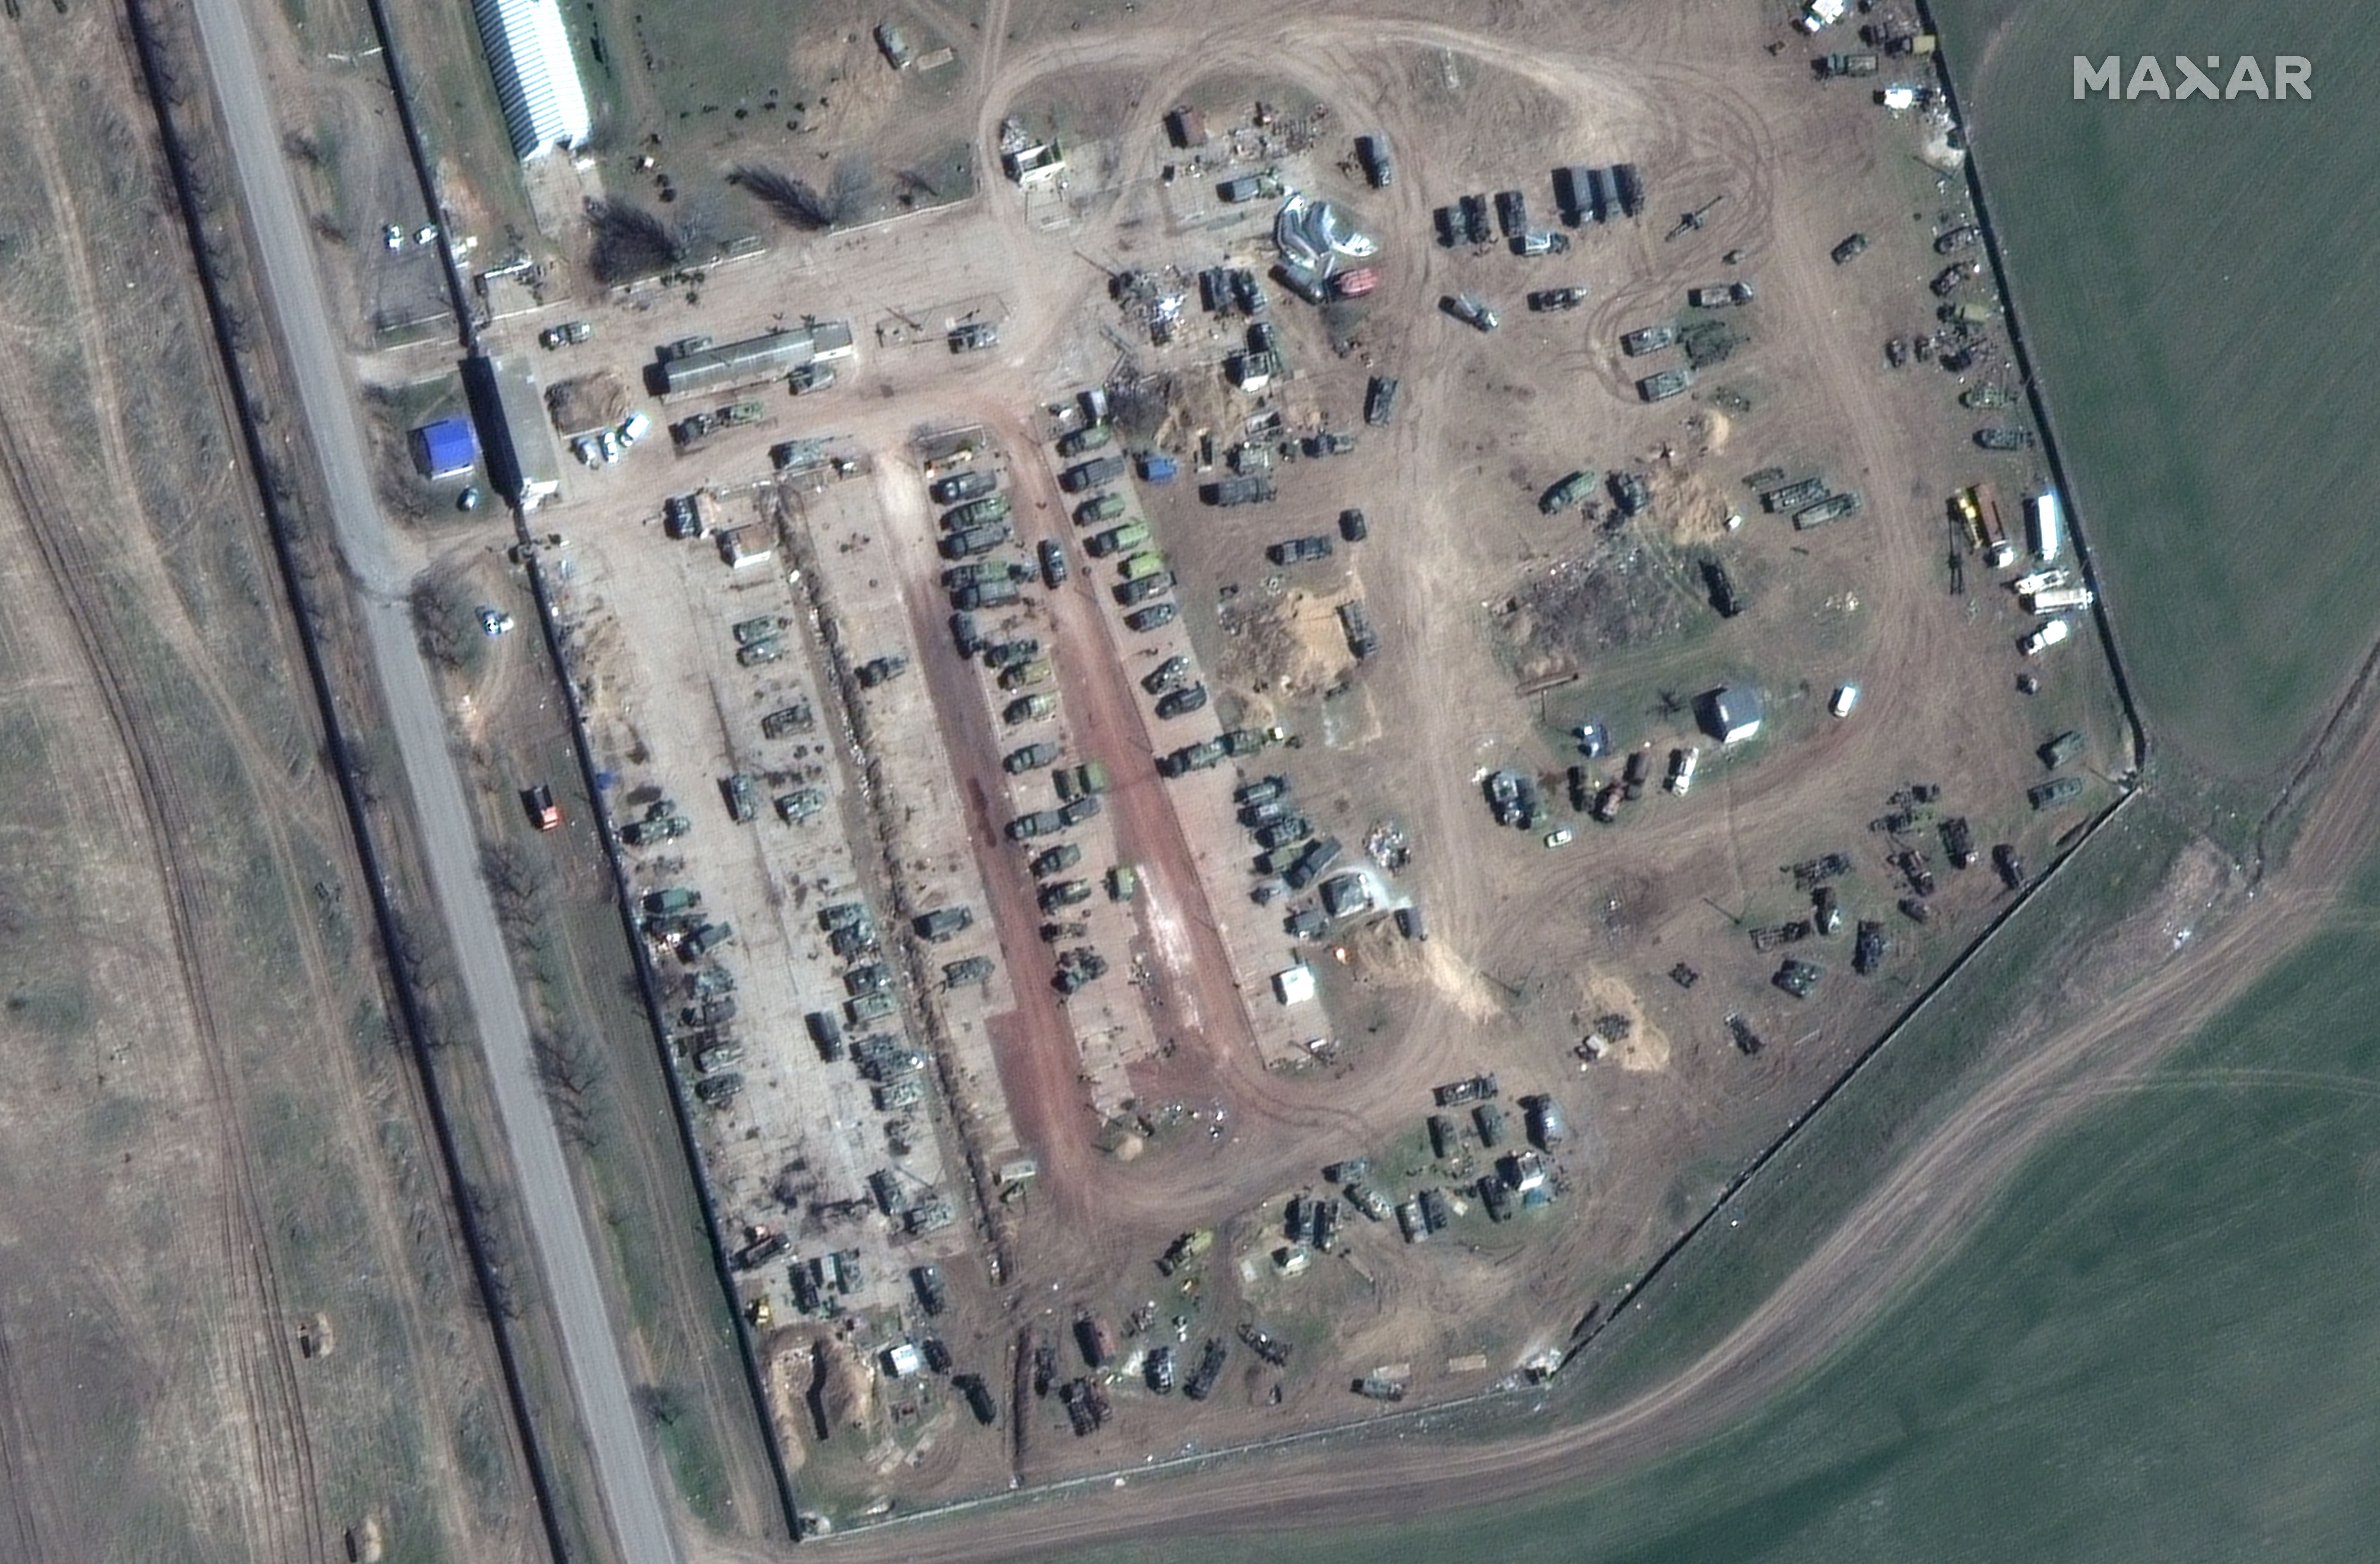 Zdjęcie przedstawiające rosyjski obszar konserwacji uzbrojenia i sprzętu w pobliżu lotniska w Chersoniu na Ukrainie, wykonane 12 kwietnia.